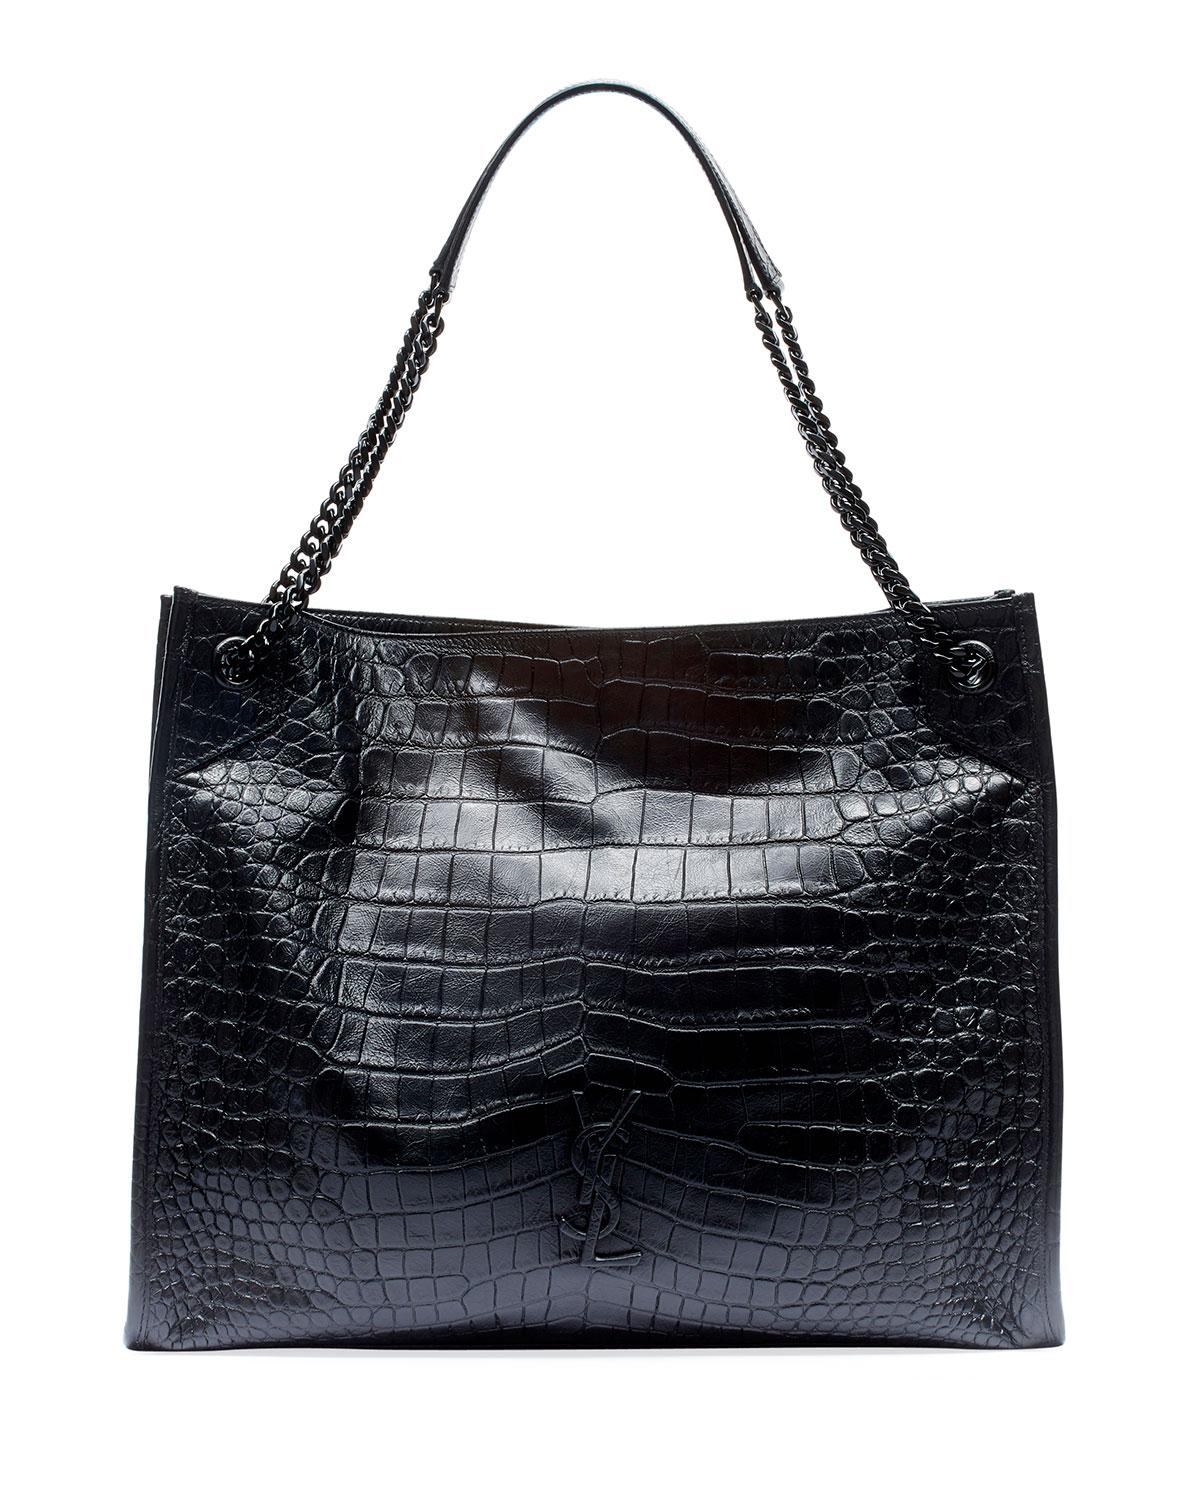 Saint Laurent Black Uptown Small Crocodile-embossed Leather Tote Bag